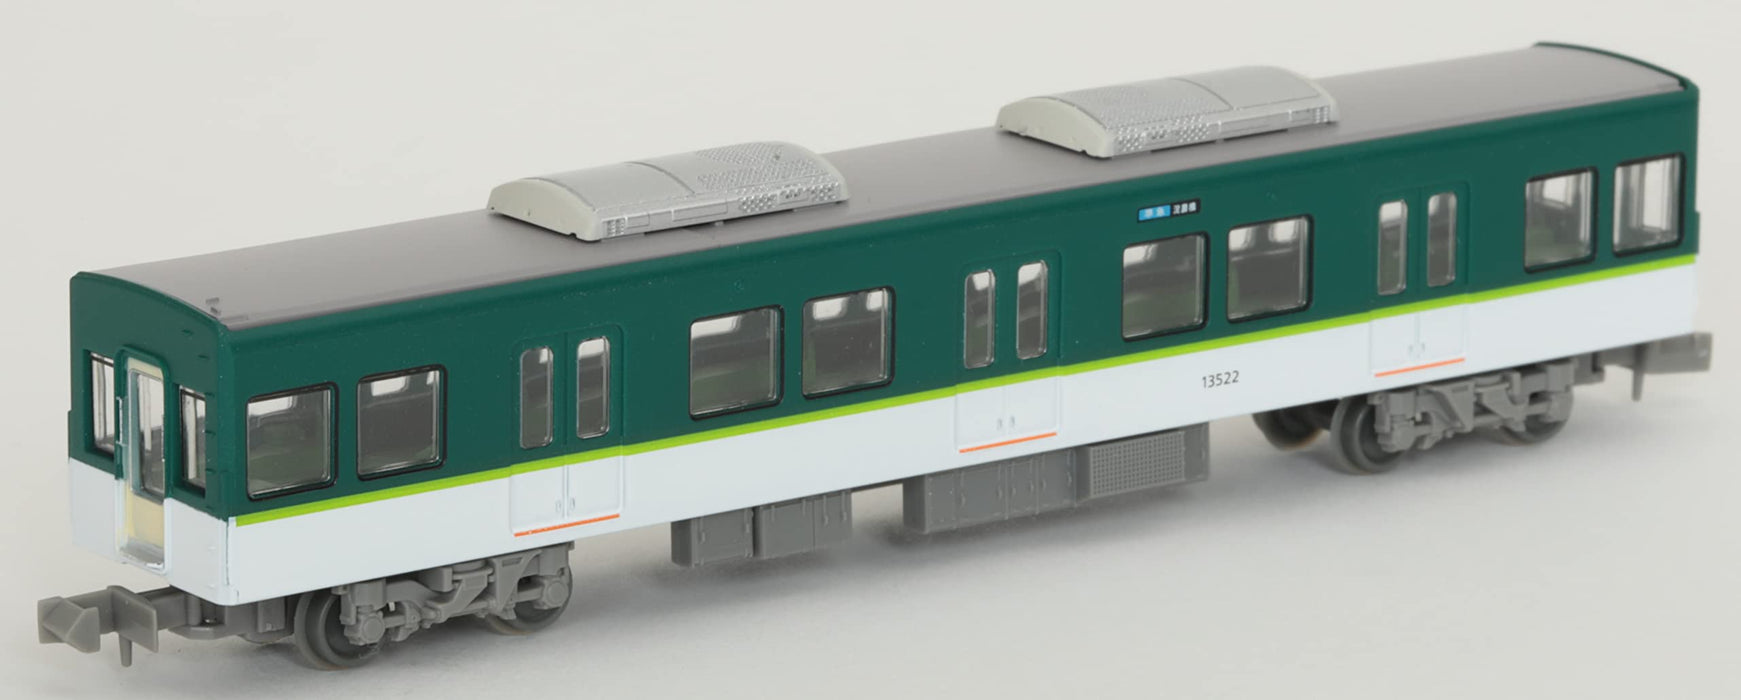 Tomytec Japan Railway Collection Keihan Electric Railway Series 13000 7 Ensemble de voitures Fournitures de diorama (1ère commande de production limitée) 318309